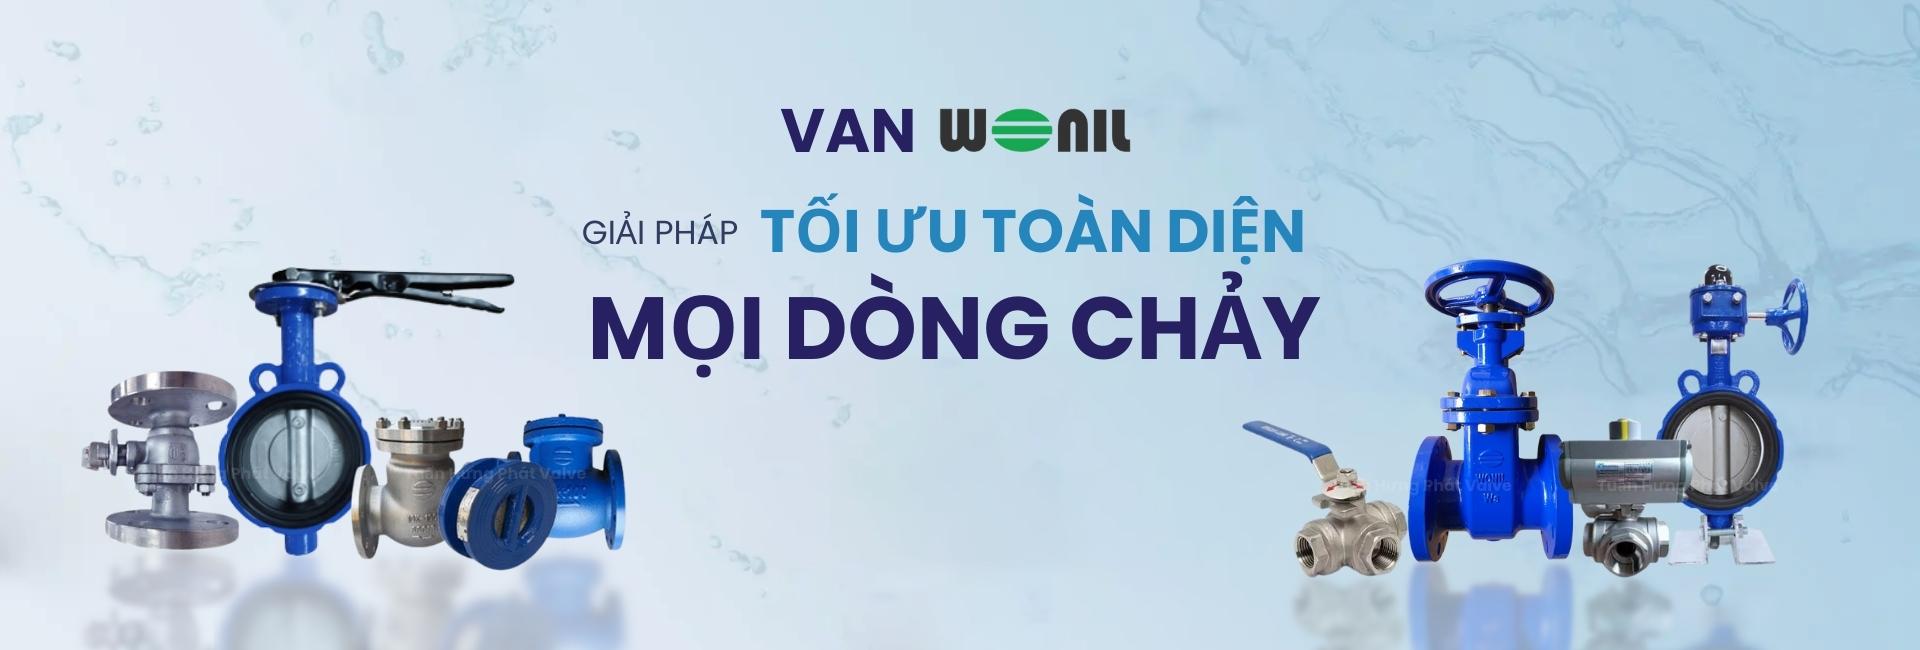 banner van nhập khẩu Wonil Hàn Quốc